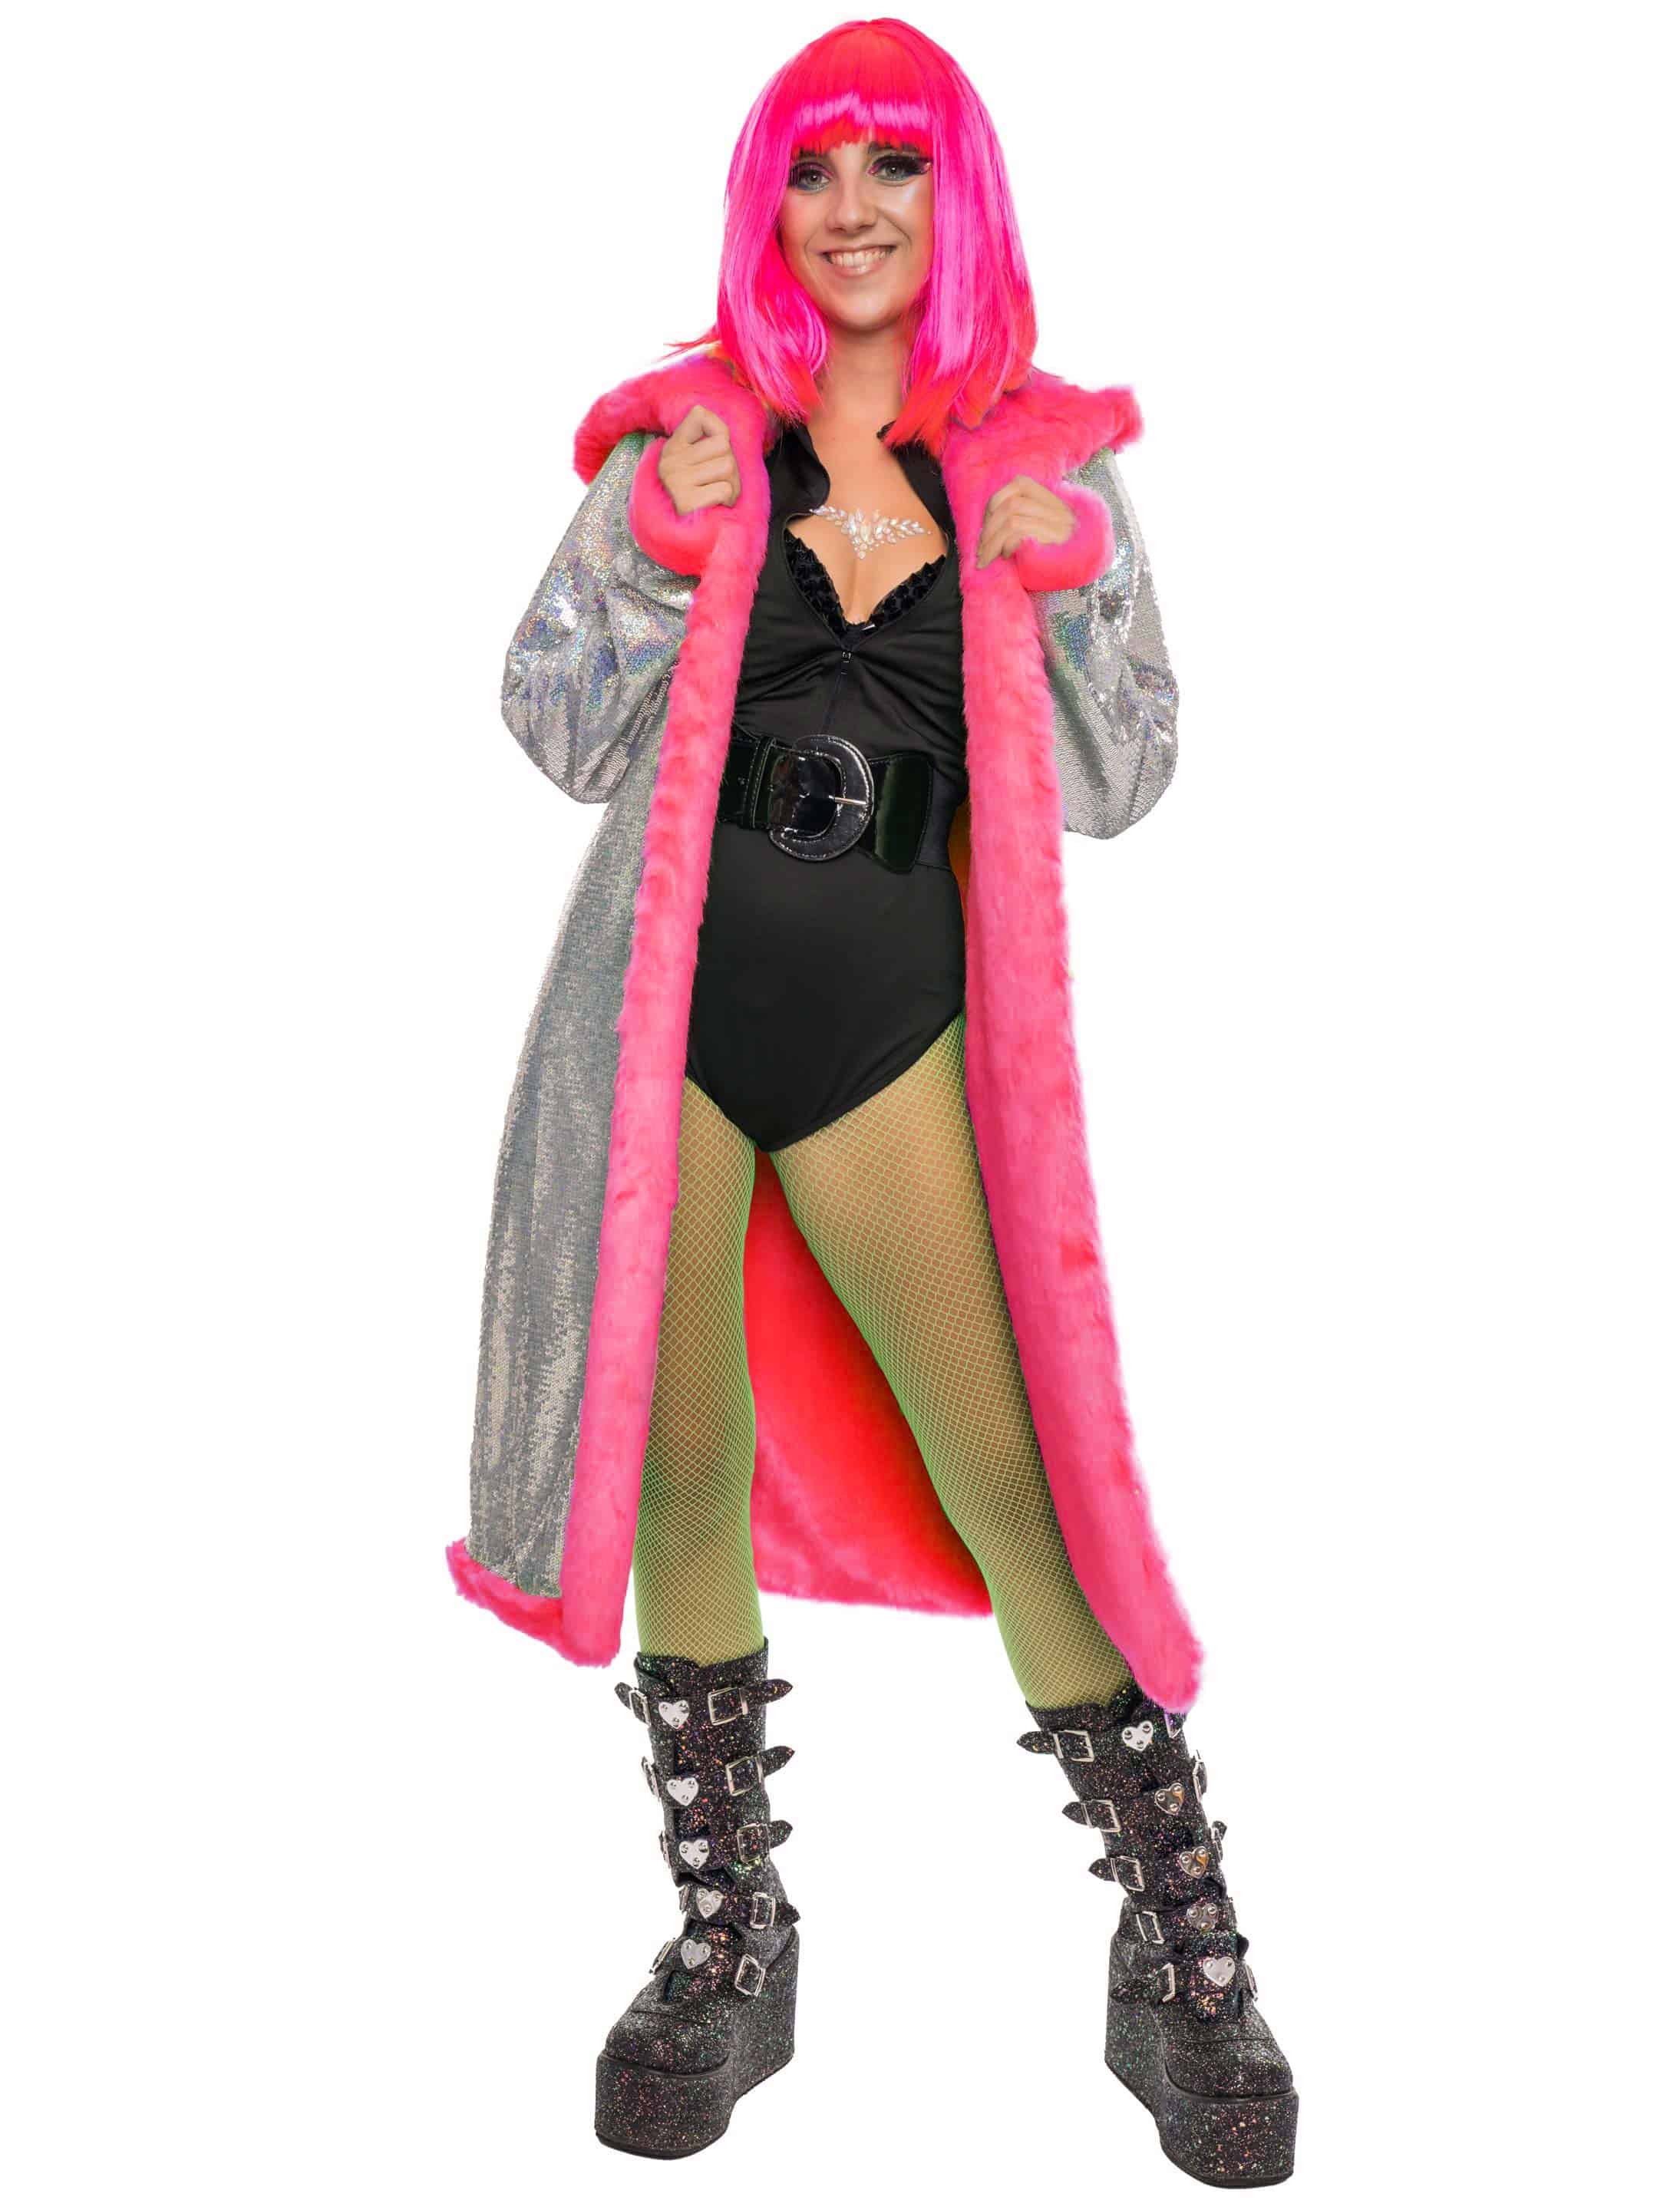 Mantel mit Kapuze und Pailletten Metallic pink S/M